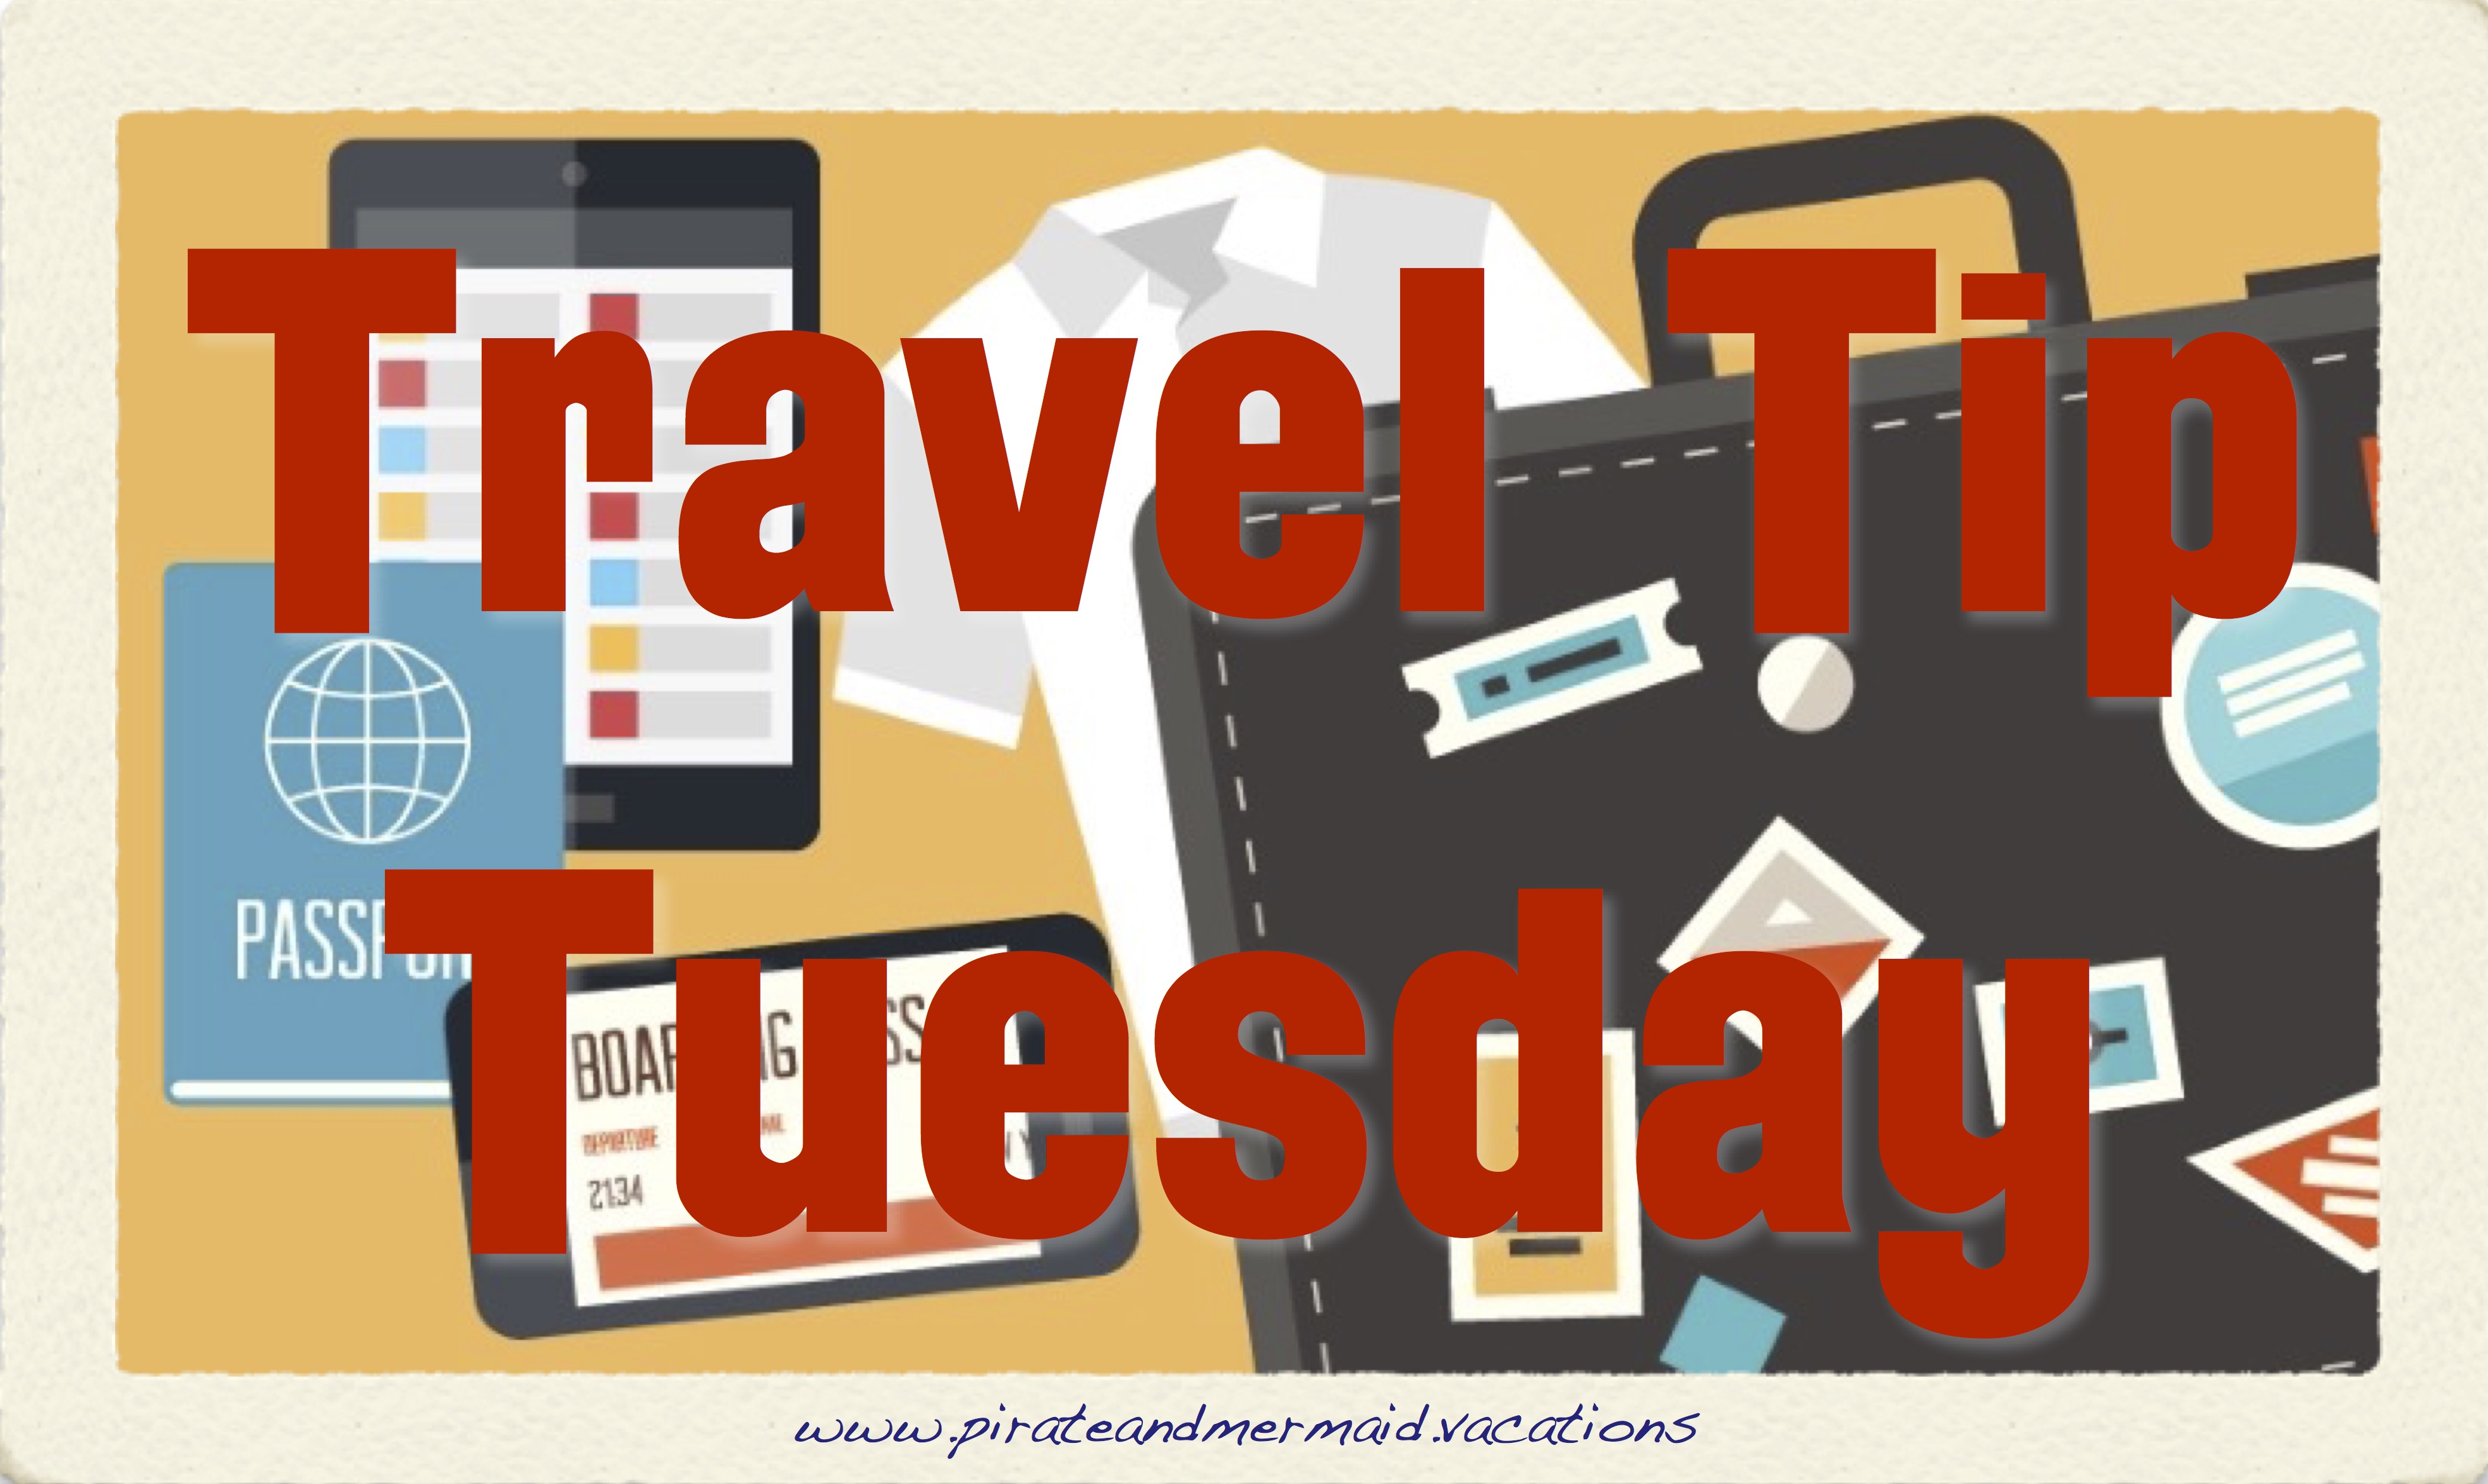 travel tip org